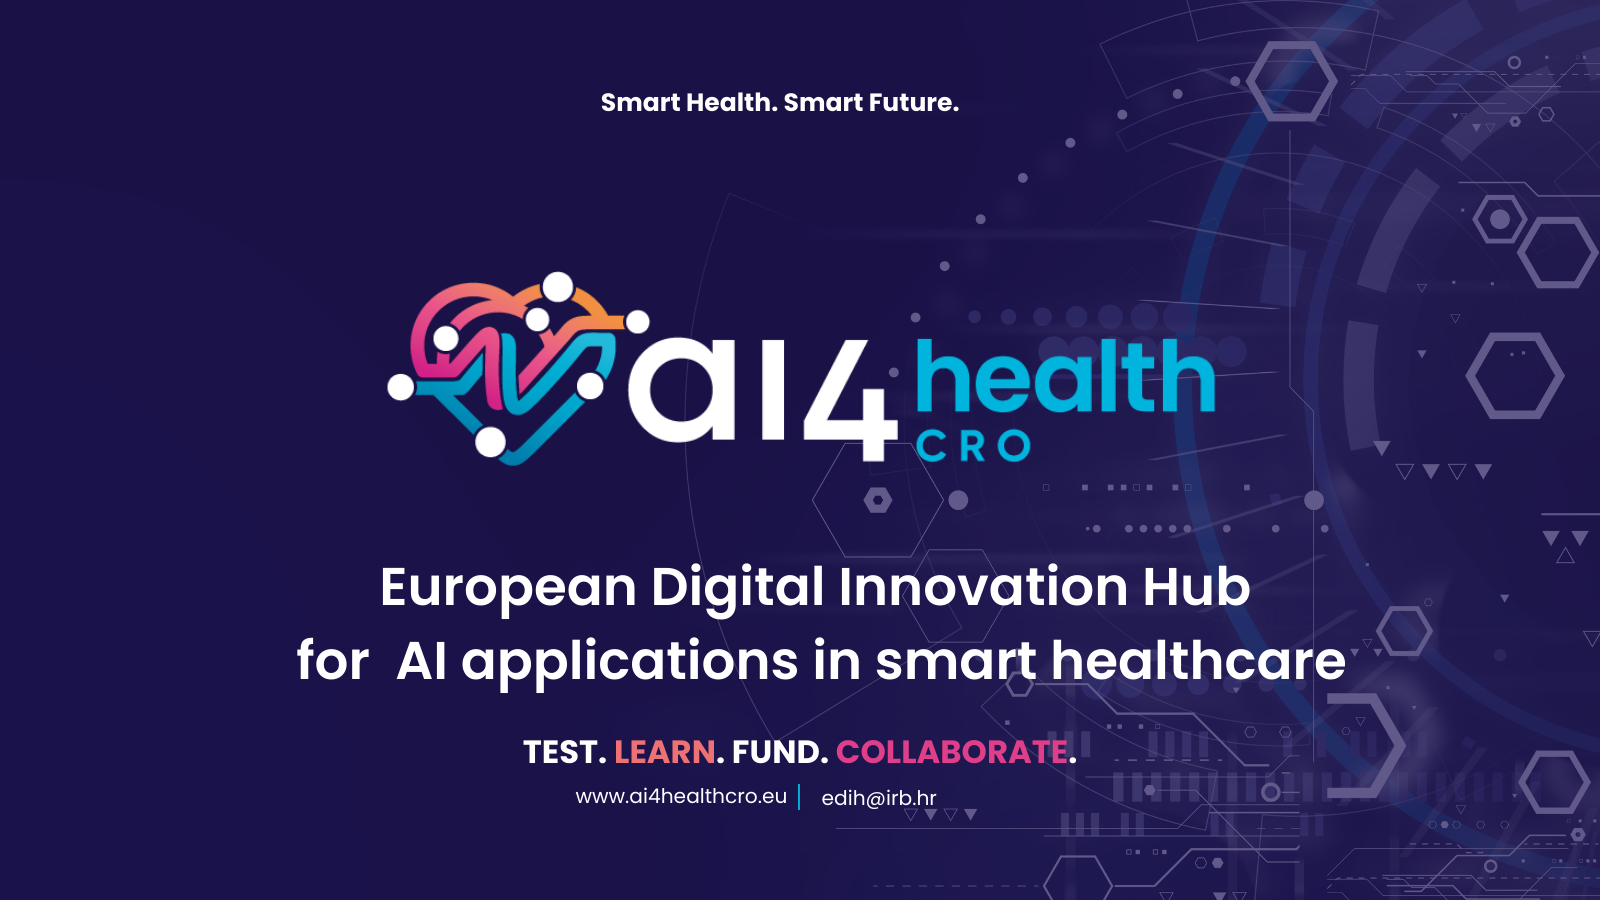 Predstavljanje Europskog digitalnog centra inovacija (EDIH) AI4HEALTH.Cro